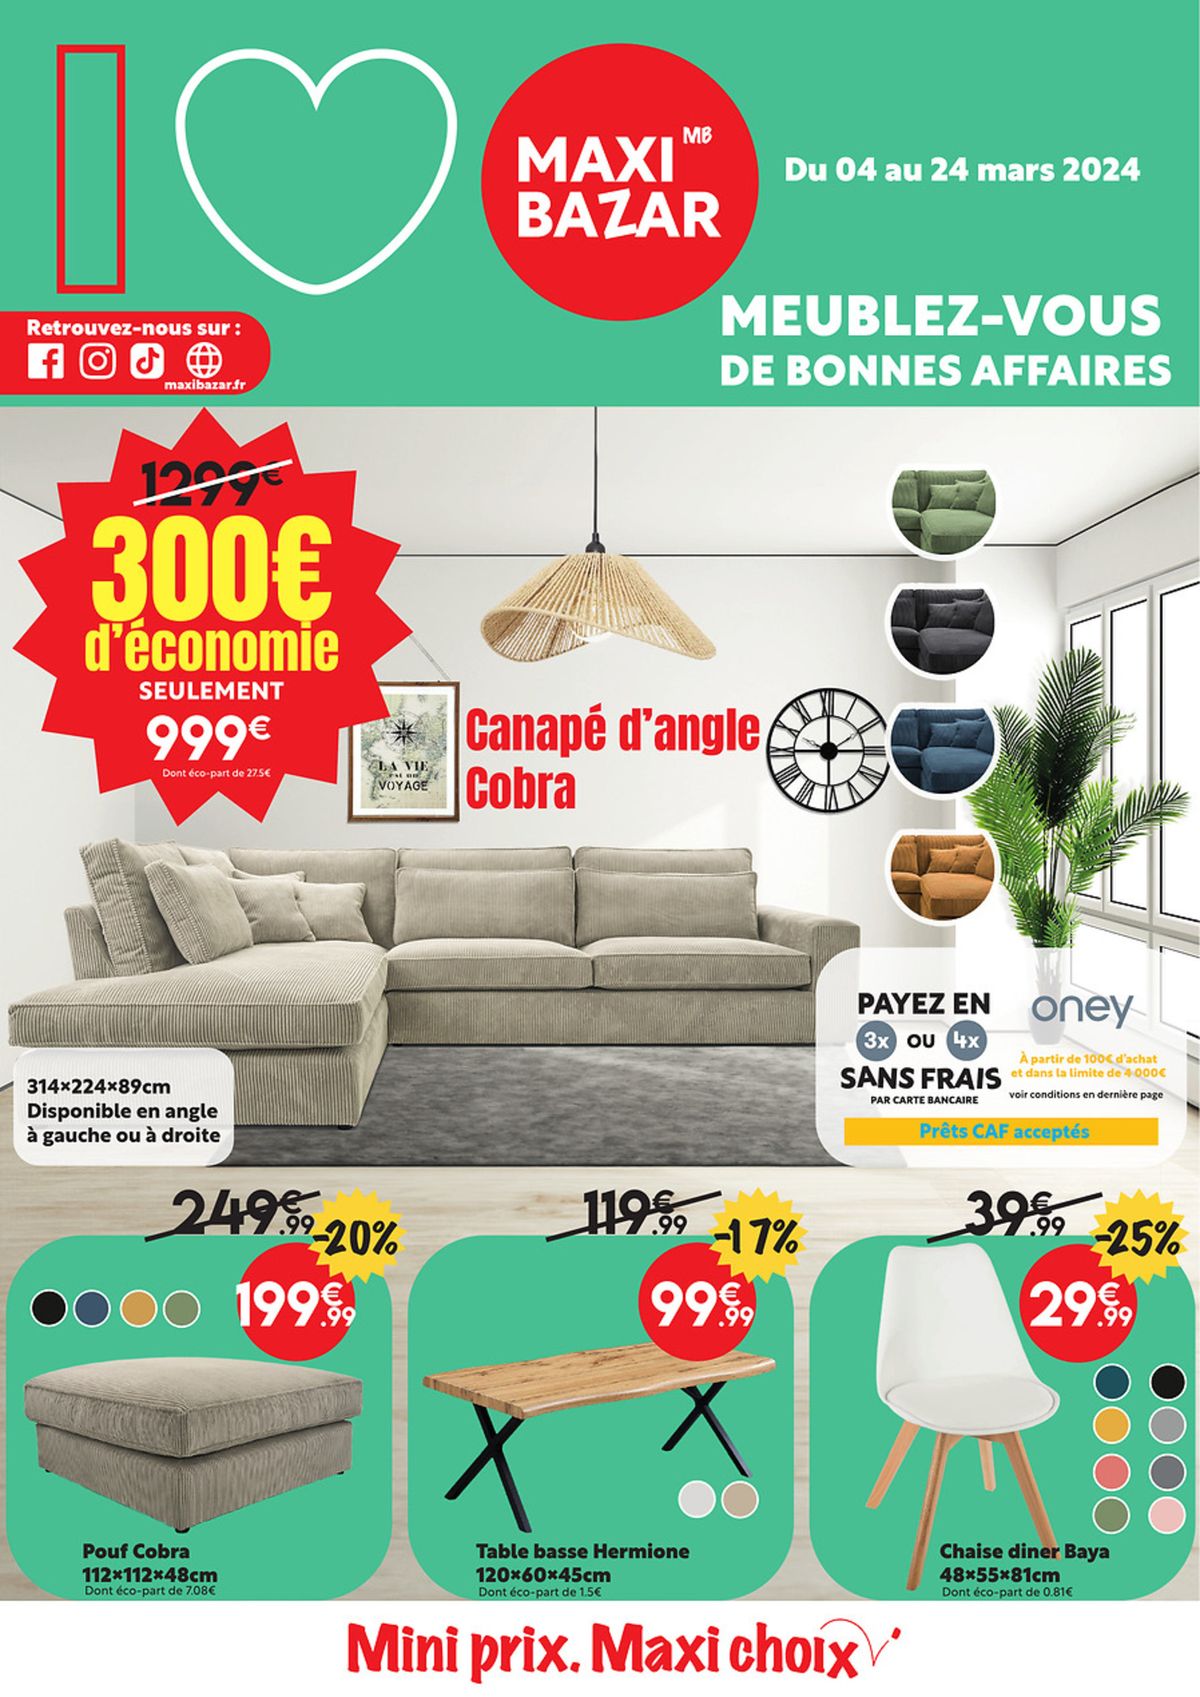 Catalogue Meublez-vous de bonnes affaires, page 00001